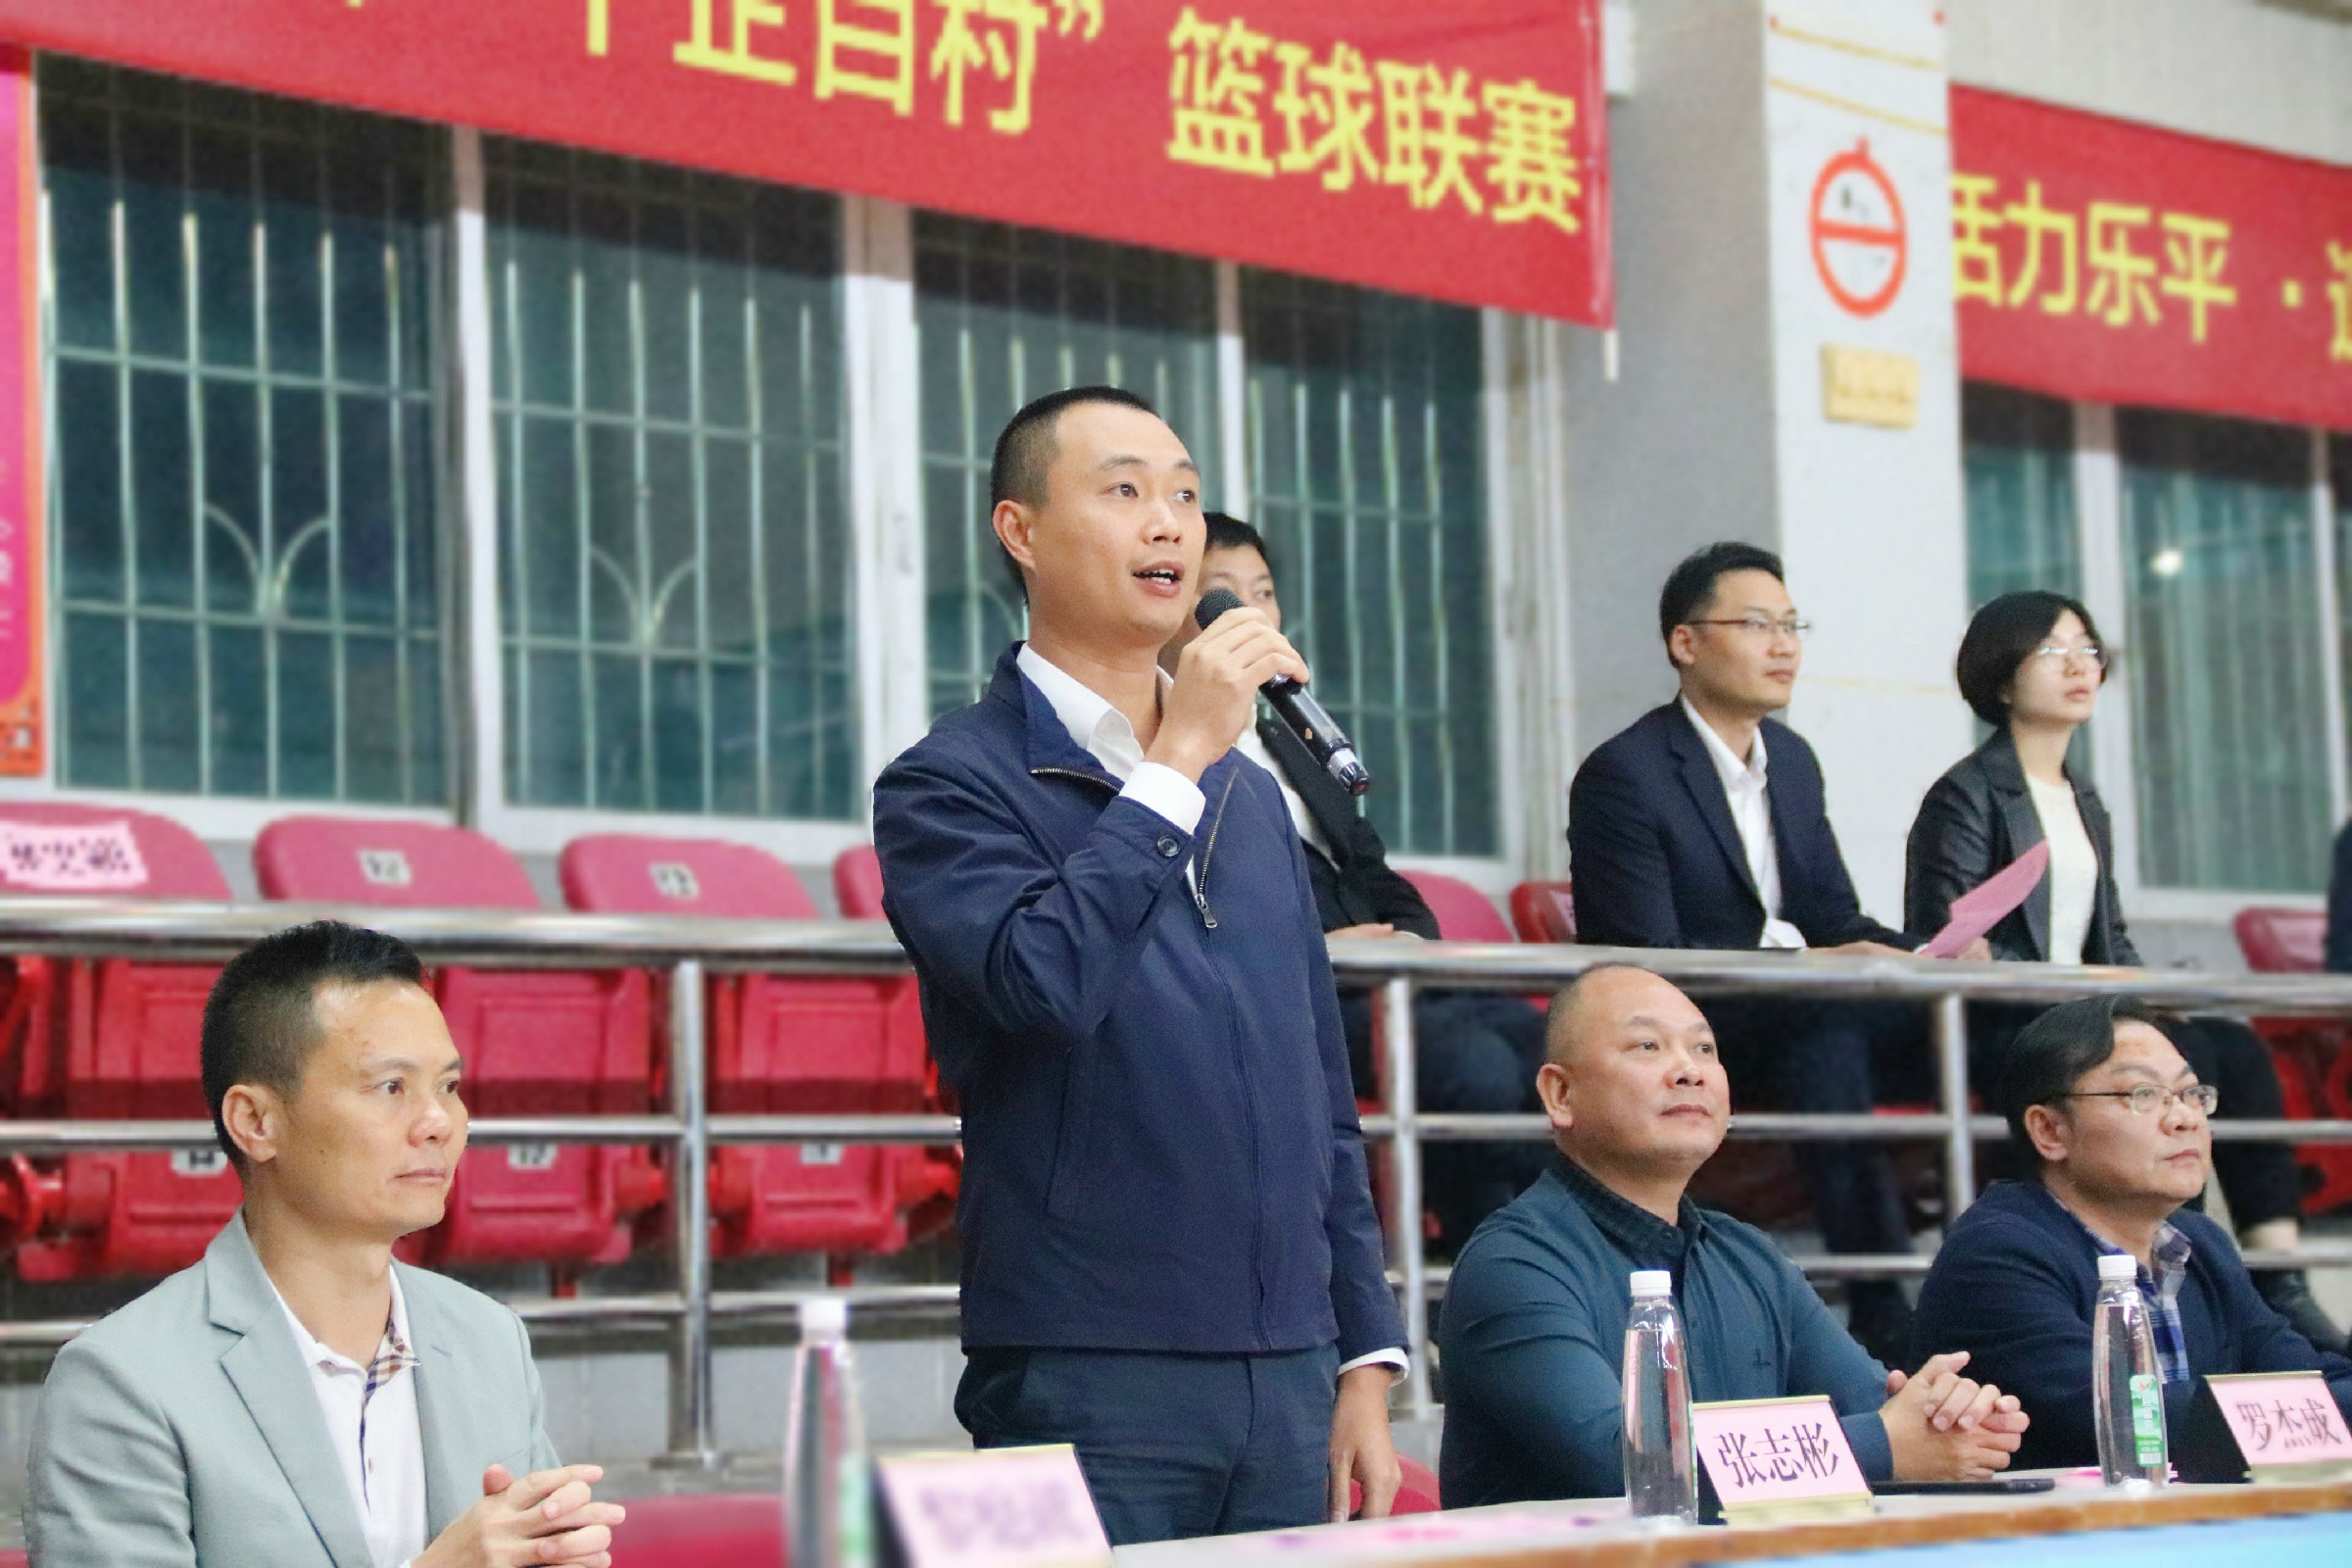 三水区委常委、乐平镇党委书记张志彬宣布比赛正式开始。